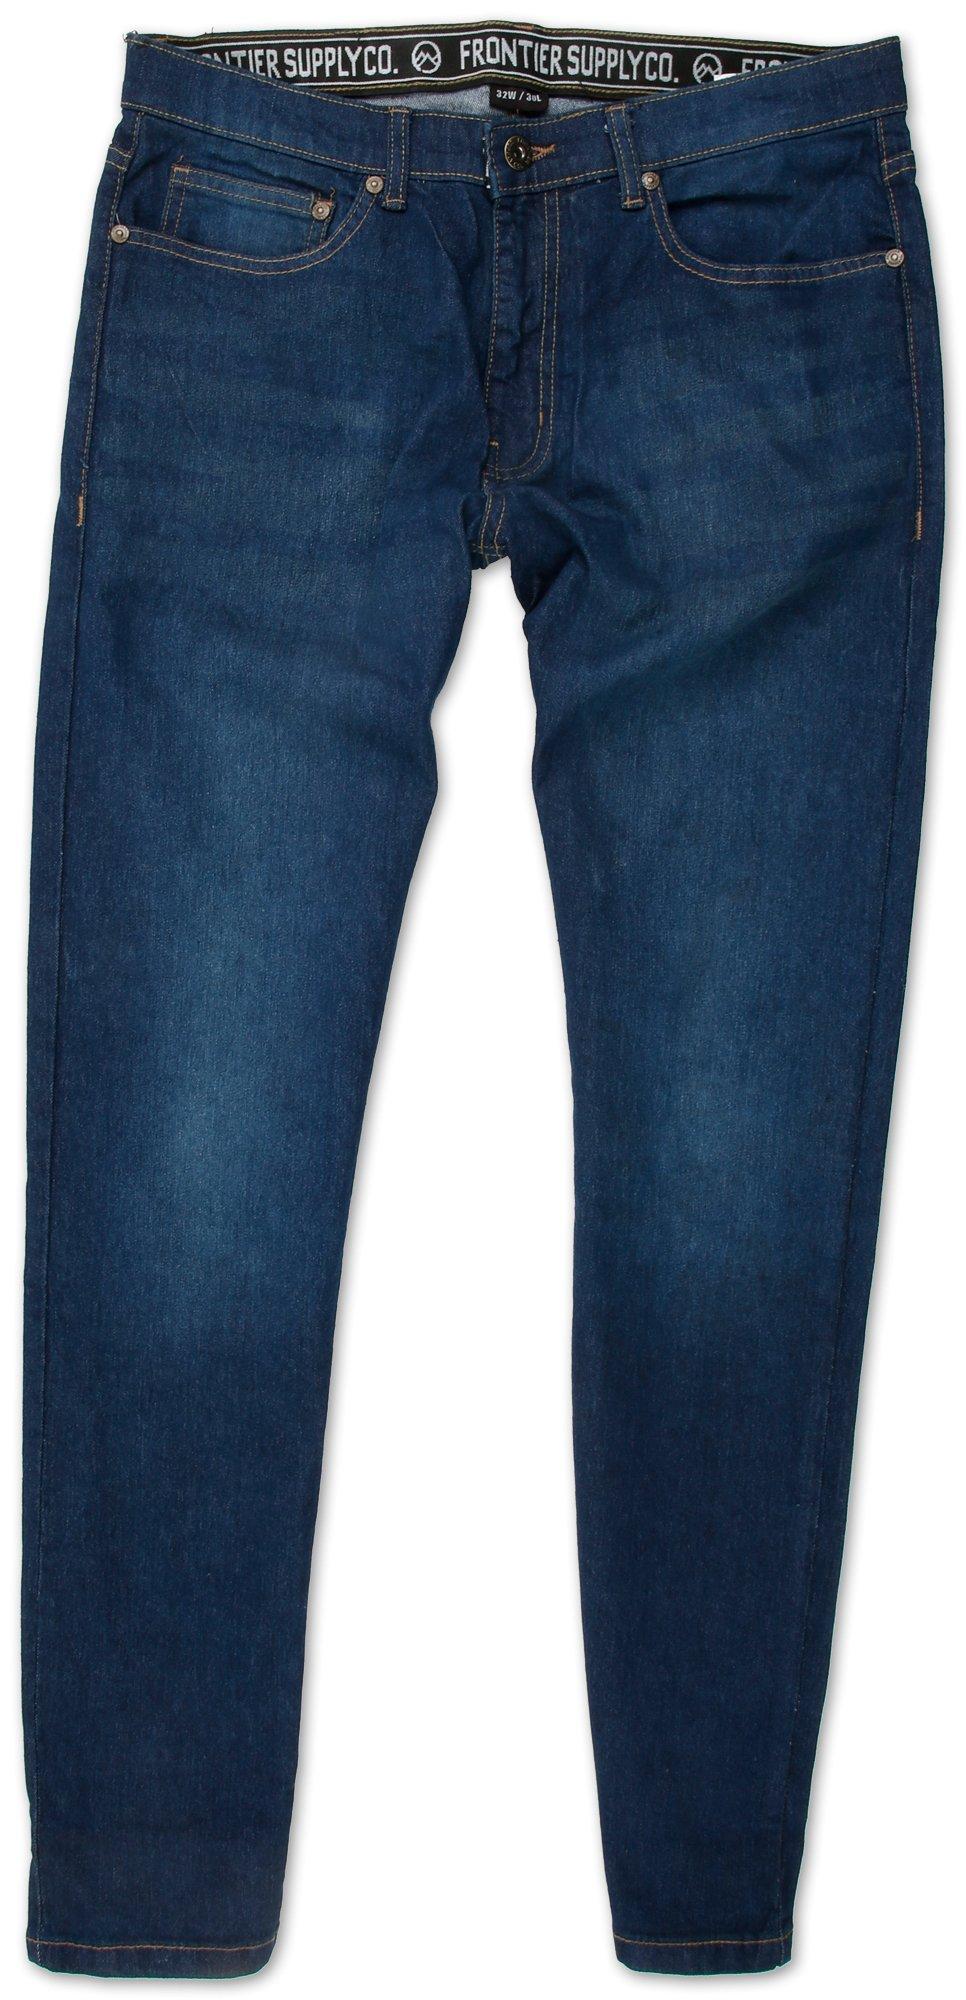 Men's Dark Wash Jeans